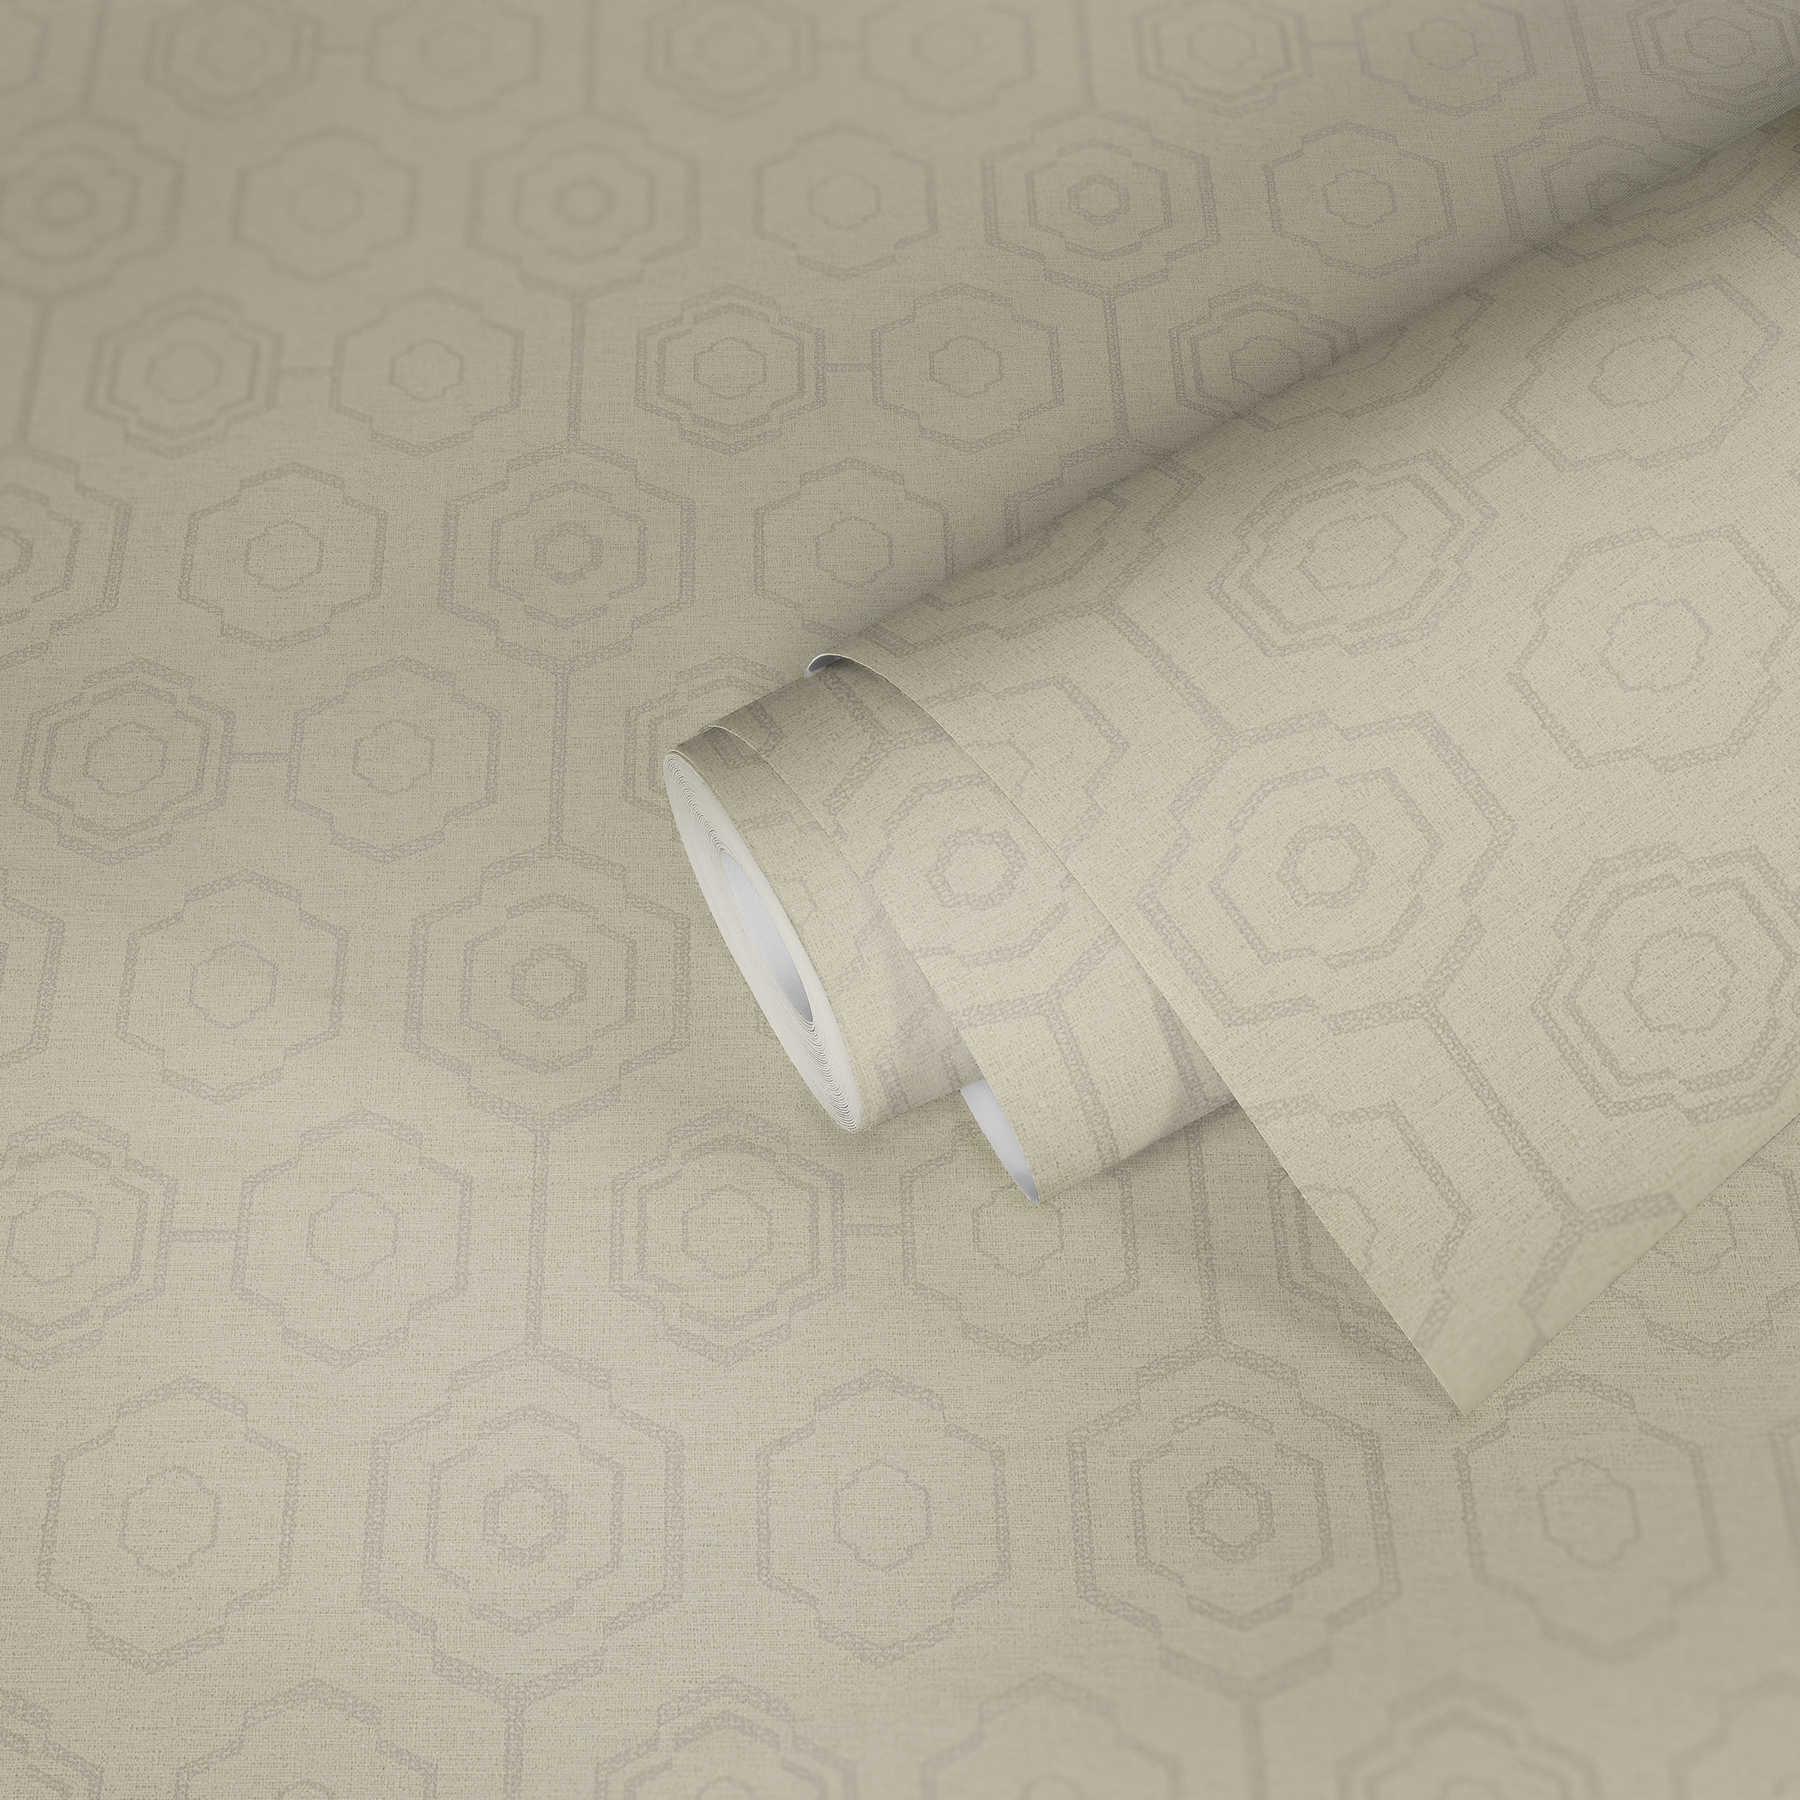             Papel pintado de aspecto textil con diseño geométrico y efecto brillante - crema, gris, beige
        